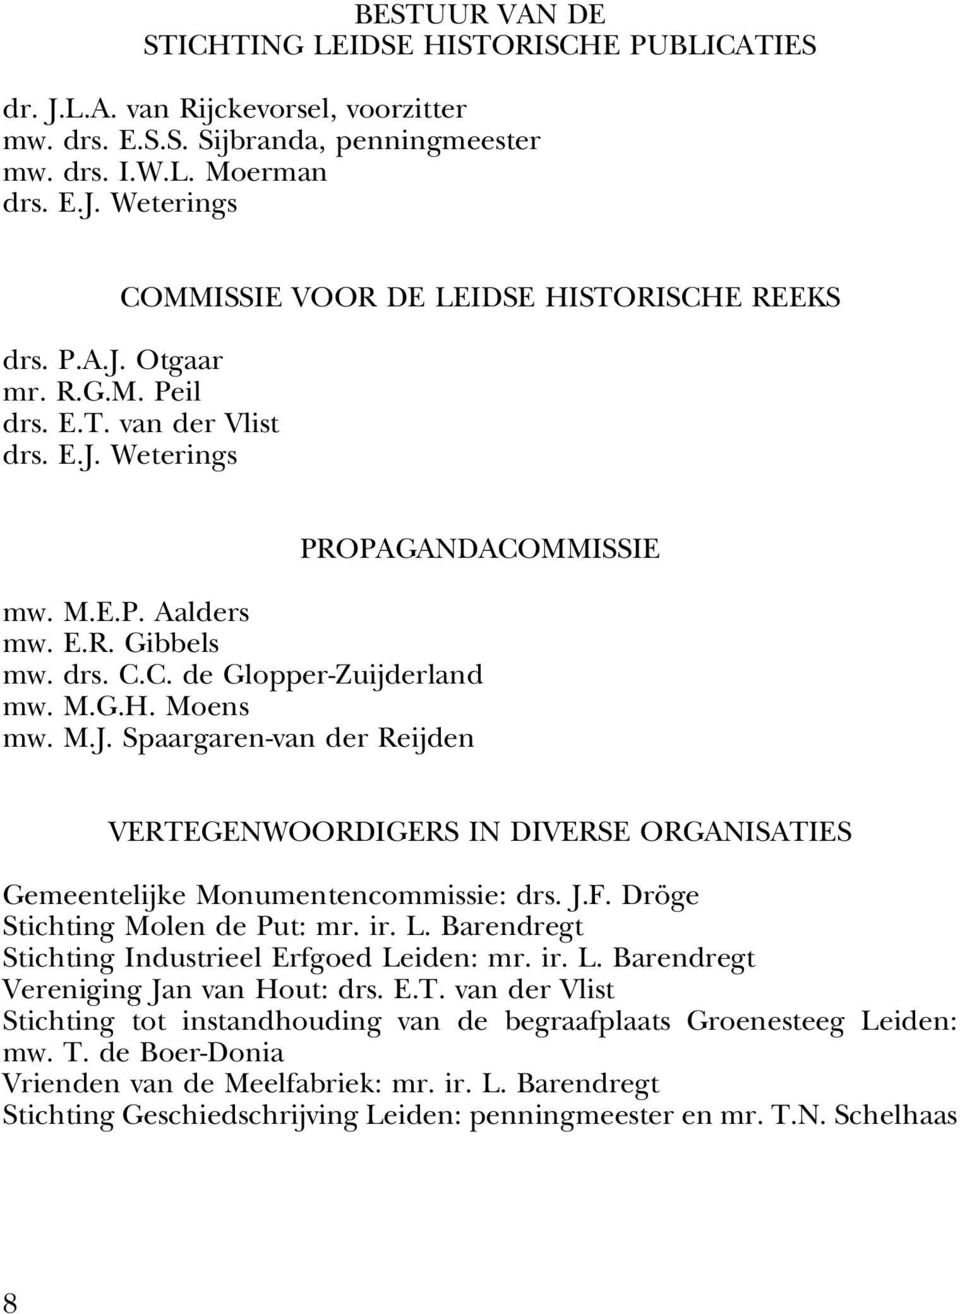 drs. C.C. de Glopper-Zuijderland mw. M.G.H. Moens mw. M.J. Spaargaren-van der Reijden VERTEGENWOORDIGERS IN DIVERSE ORGANISATIES Gemeentelijke Monumentencommissie: drs. J.F.